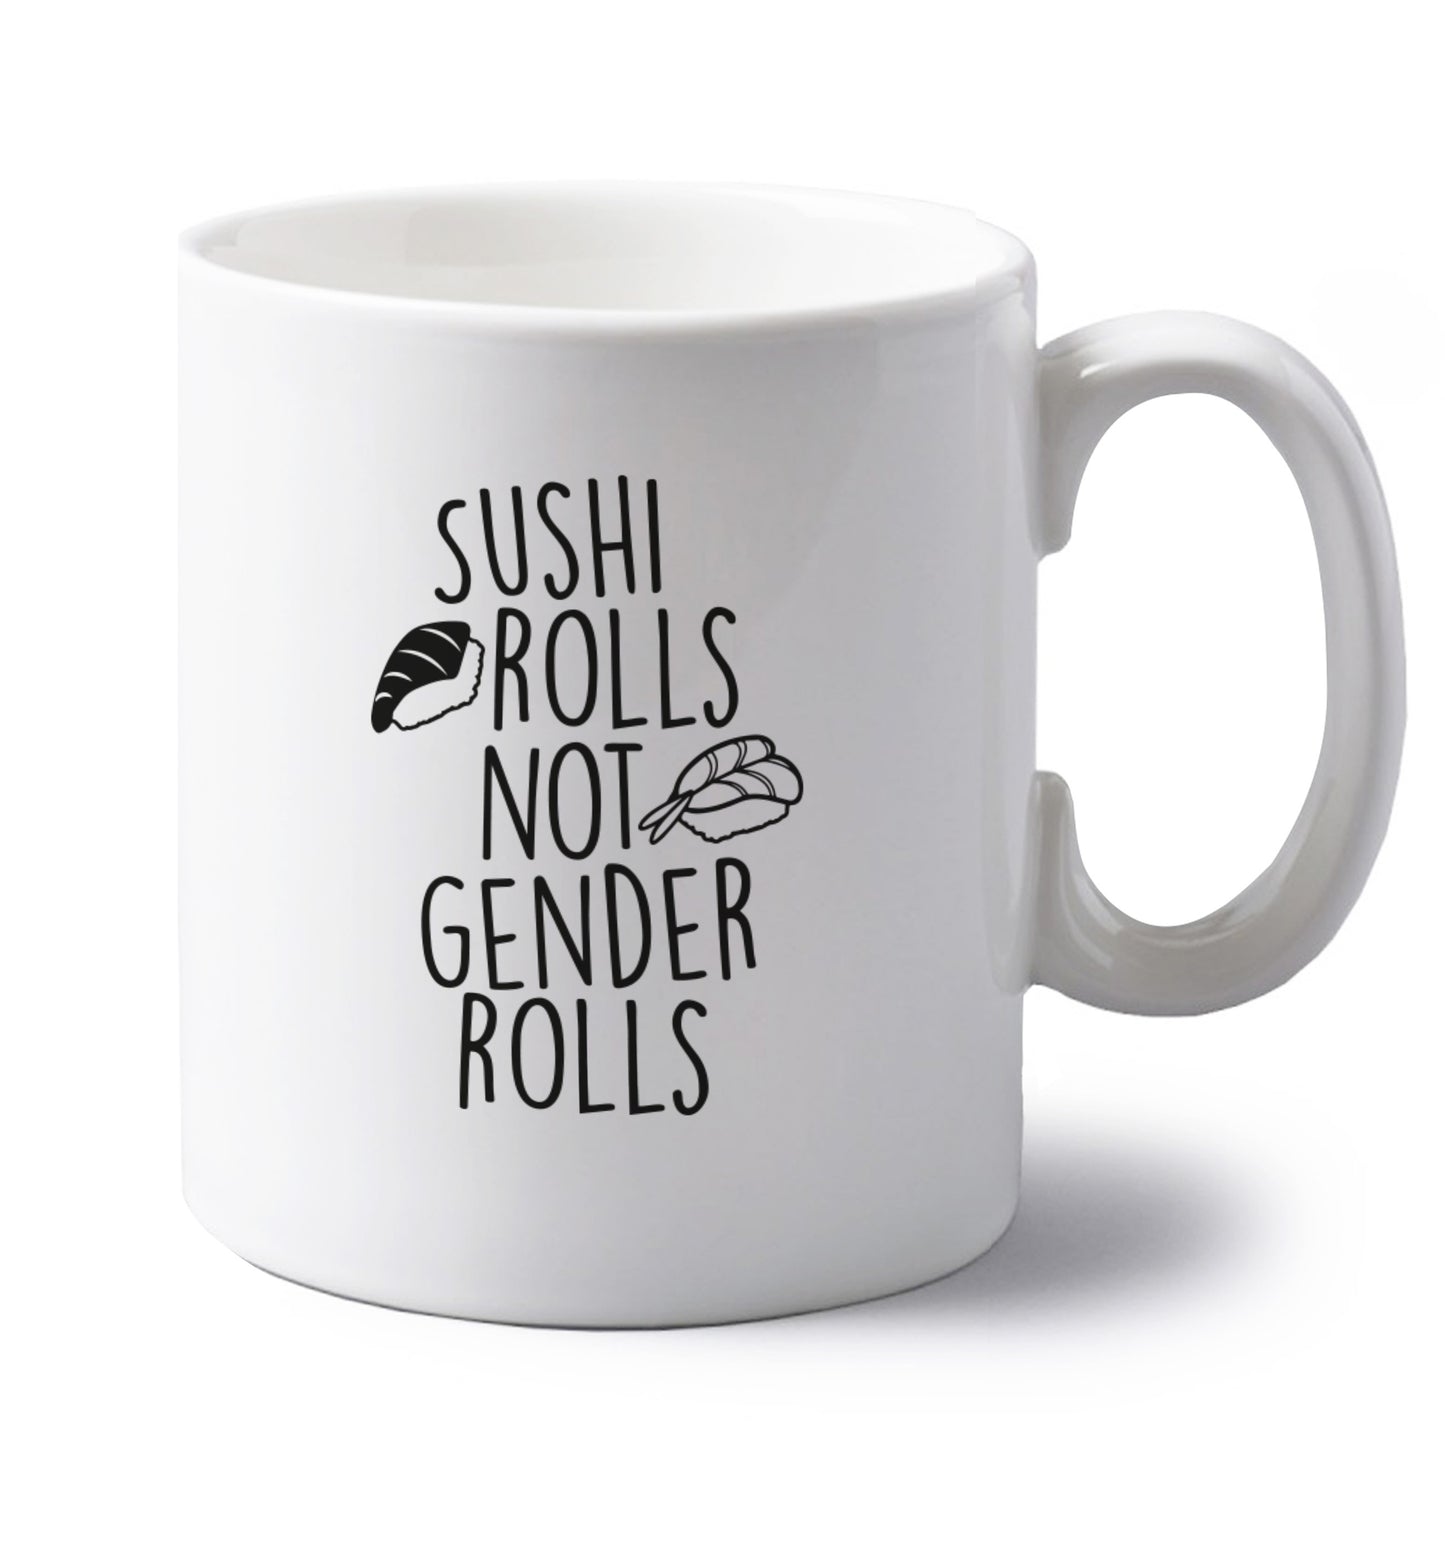 Sushi rolls not gender rolls left handed white ceramic mug 